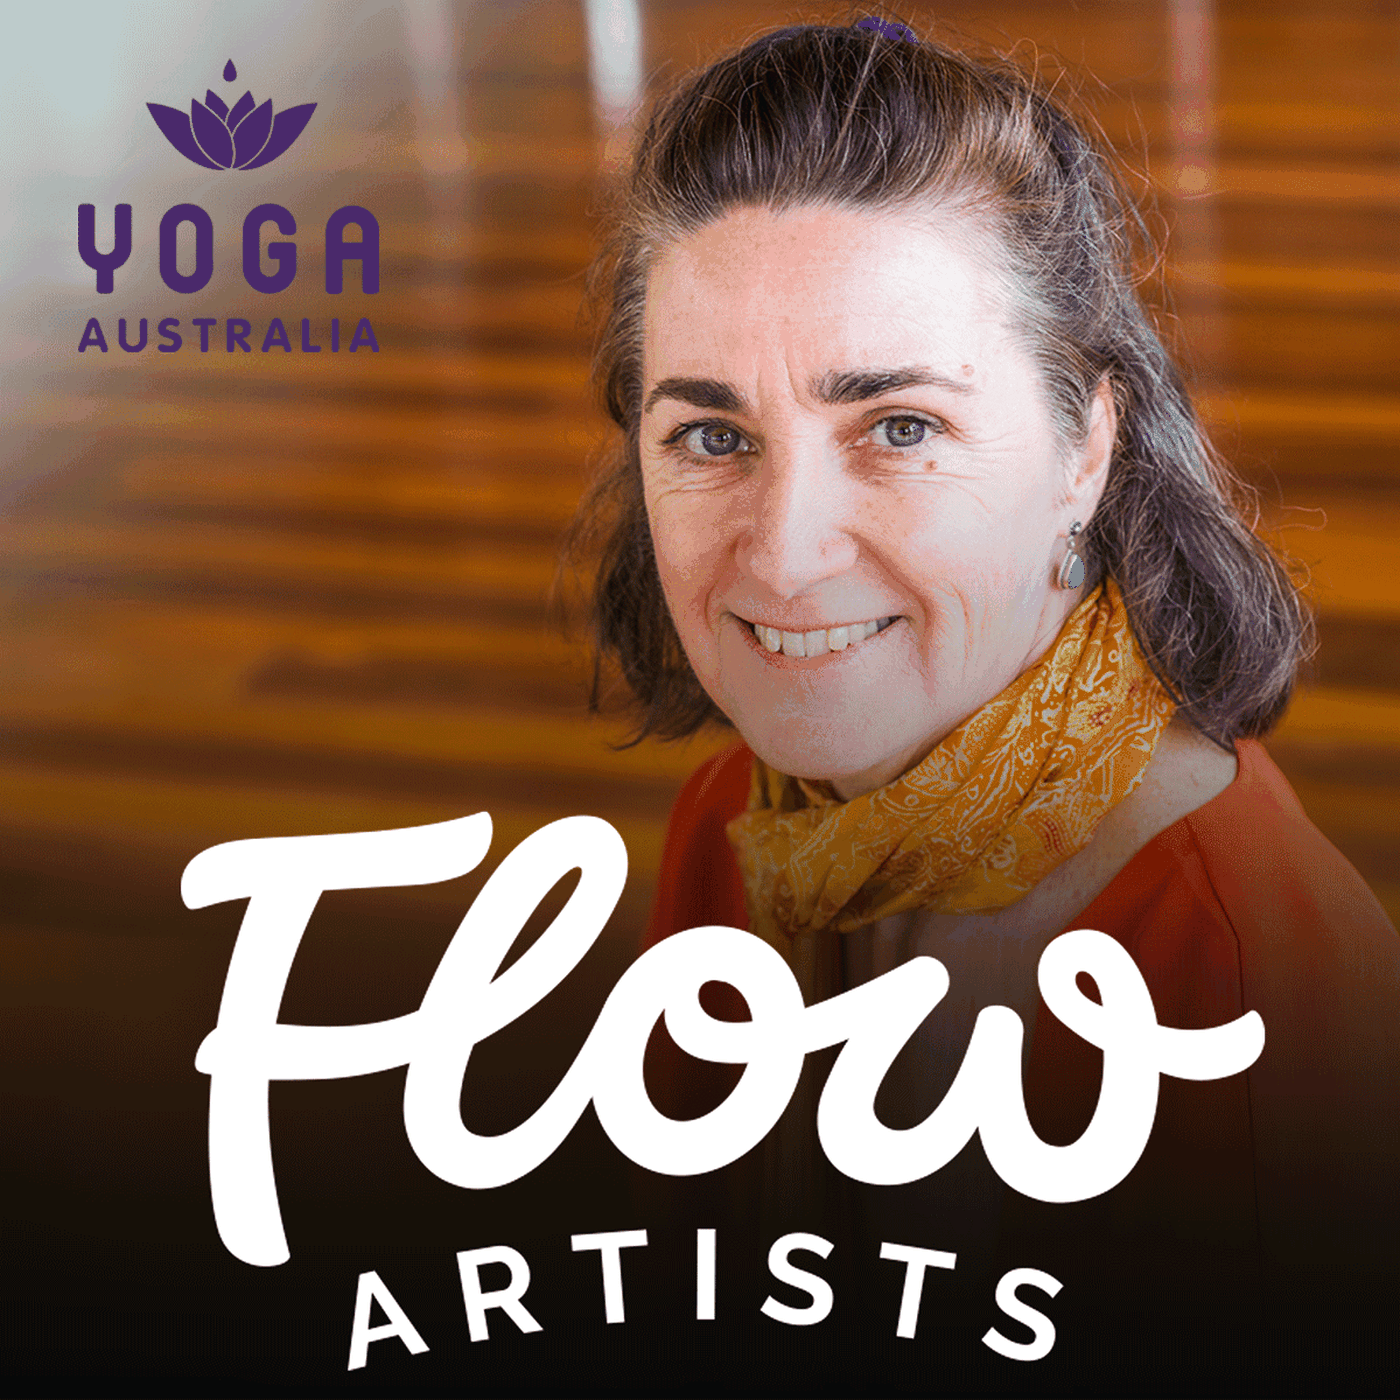 Leanne Davis - President of Yoga Australia